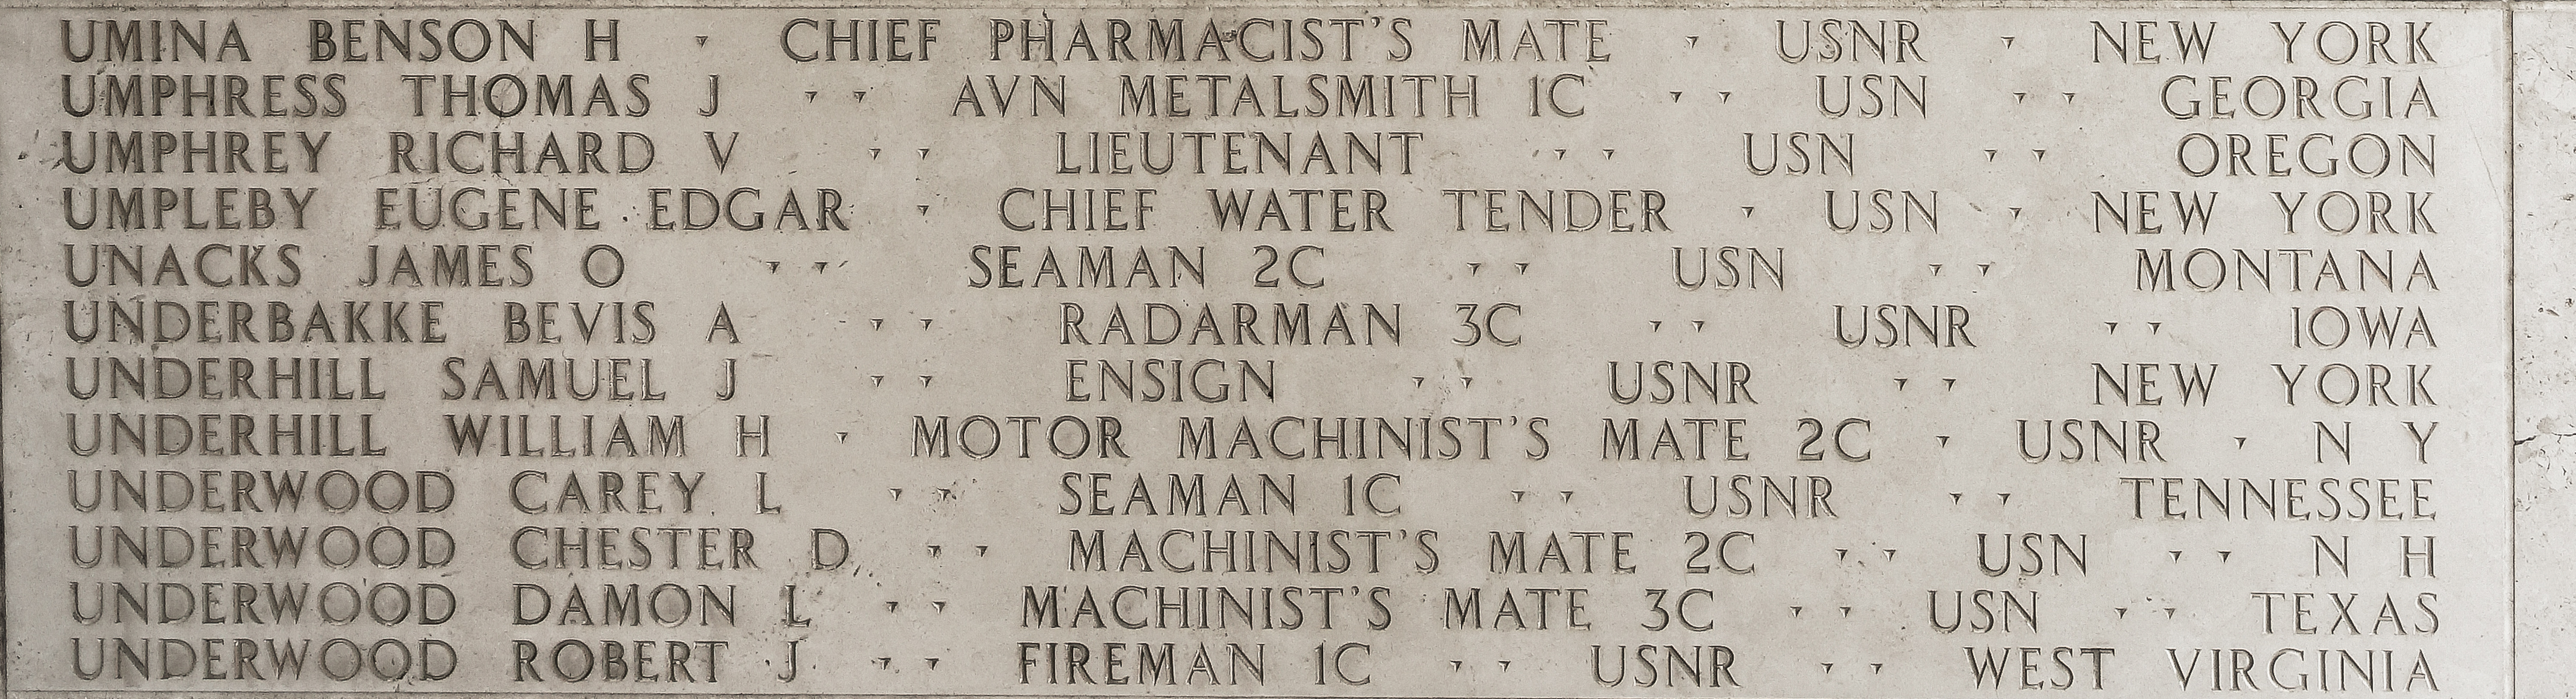 Benson H. Umina, Chief Pharmacist's Mate